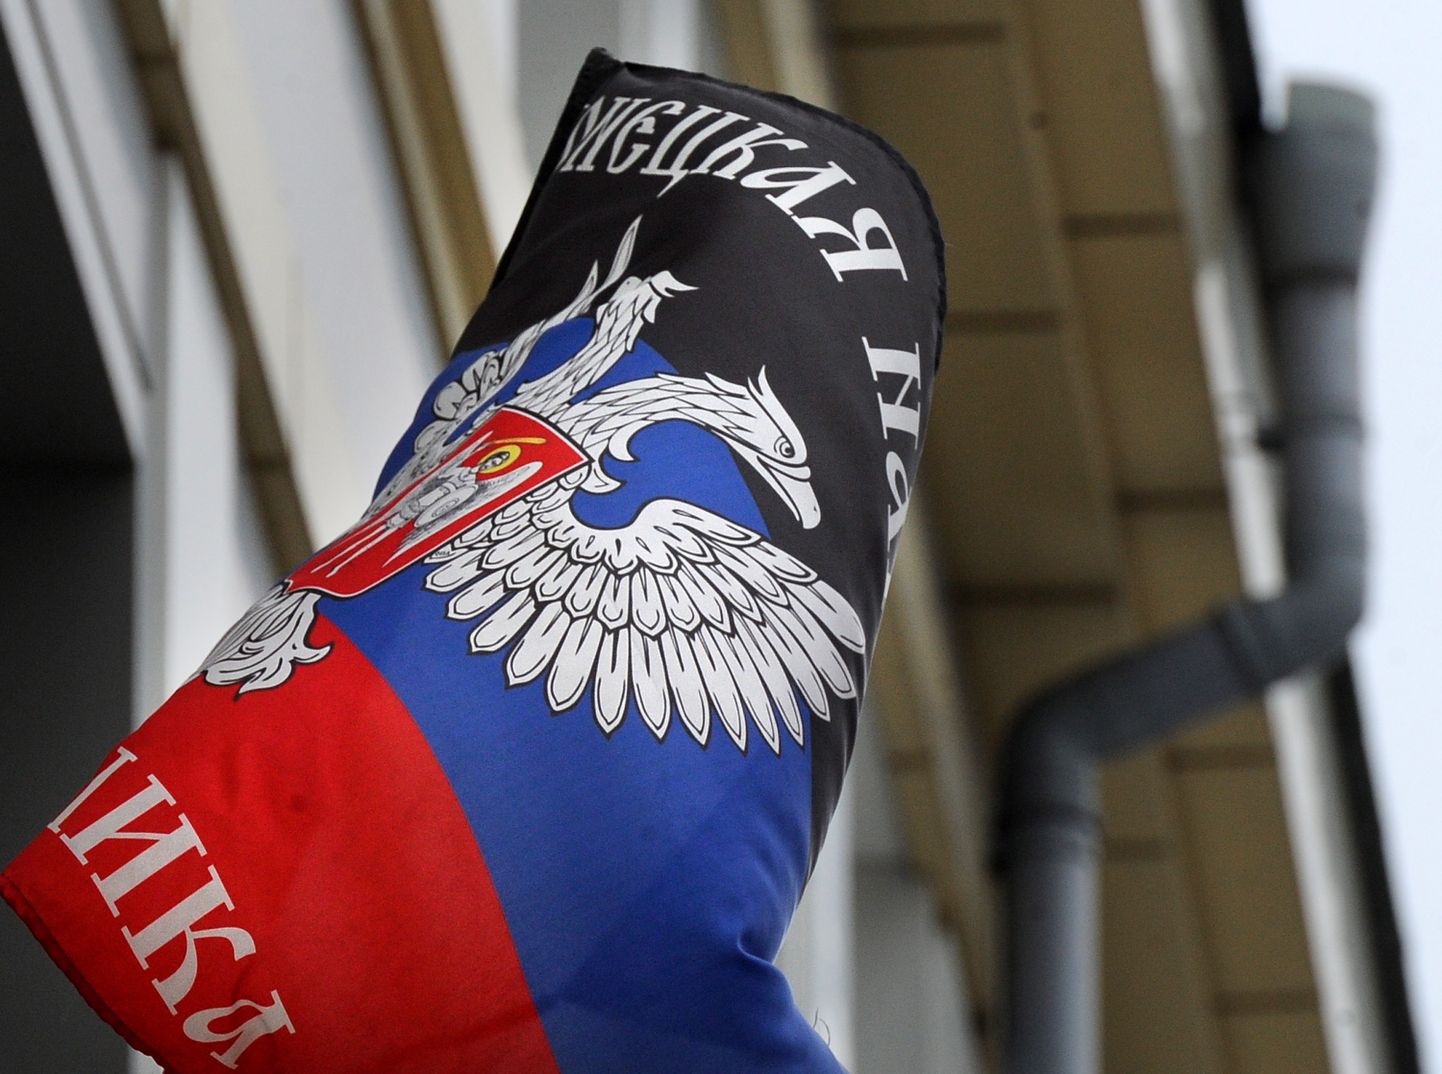 Isehakanud Donetski vabariigi lipp.